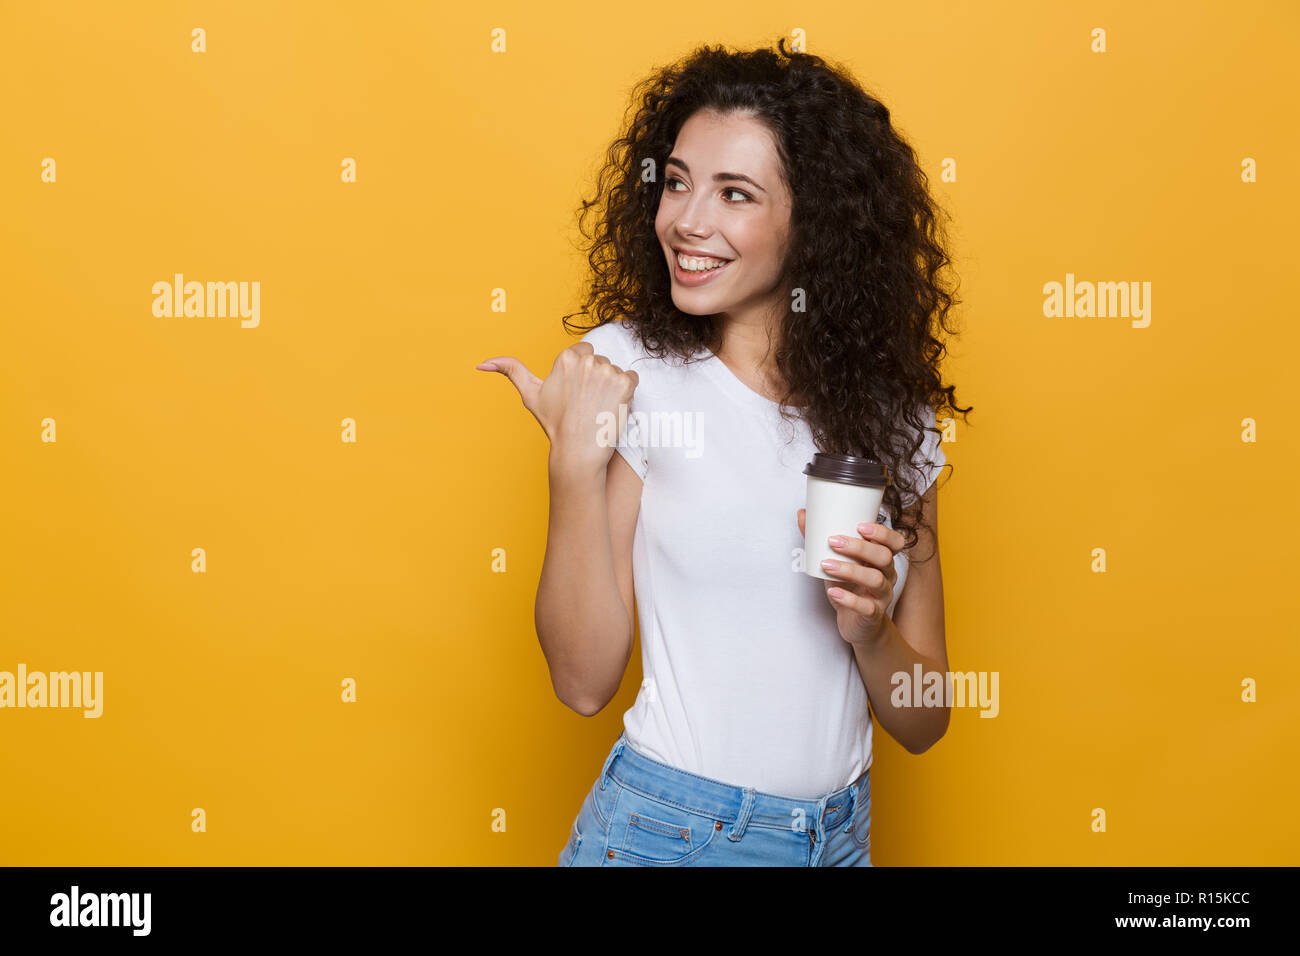 Image de femme brune 20s avec des cheveux bouclés beach café à emporter dans la tasse de papier sur fond jaune isolé Banque D'Images